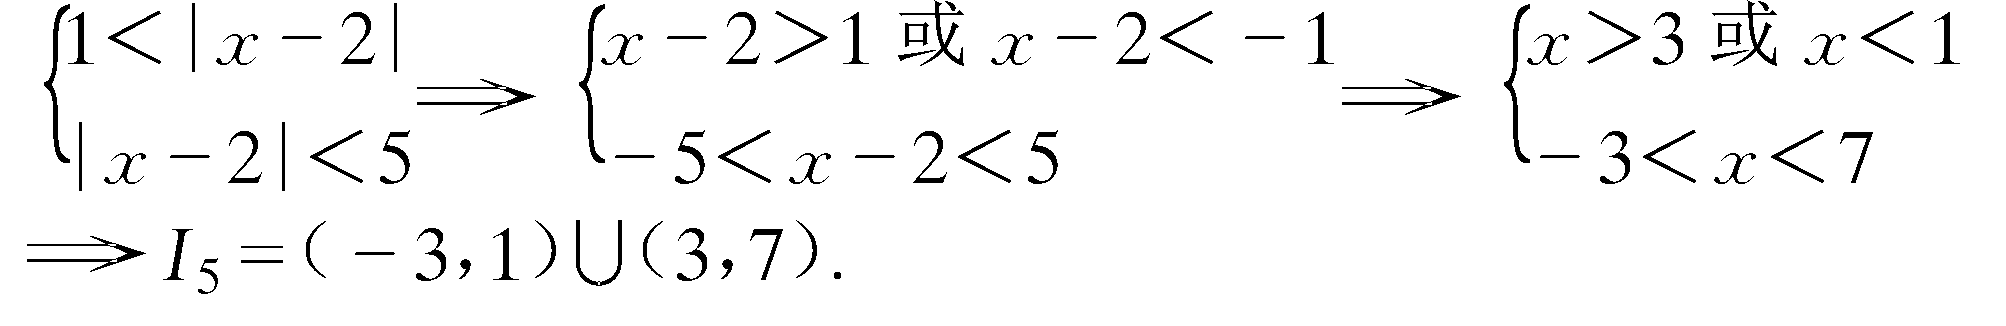 17.　用区间表示下列集合:<br>(1) I<sub>1